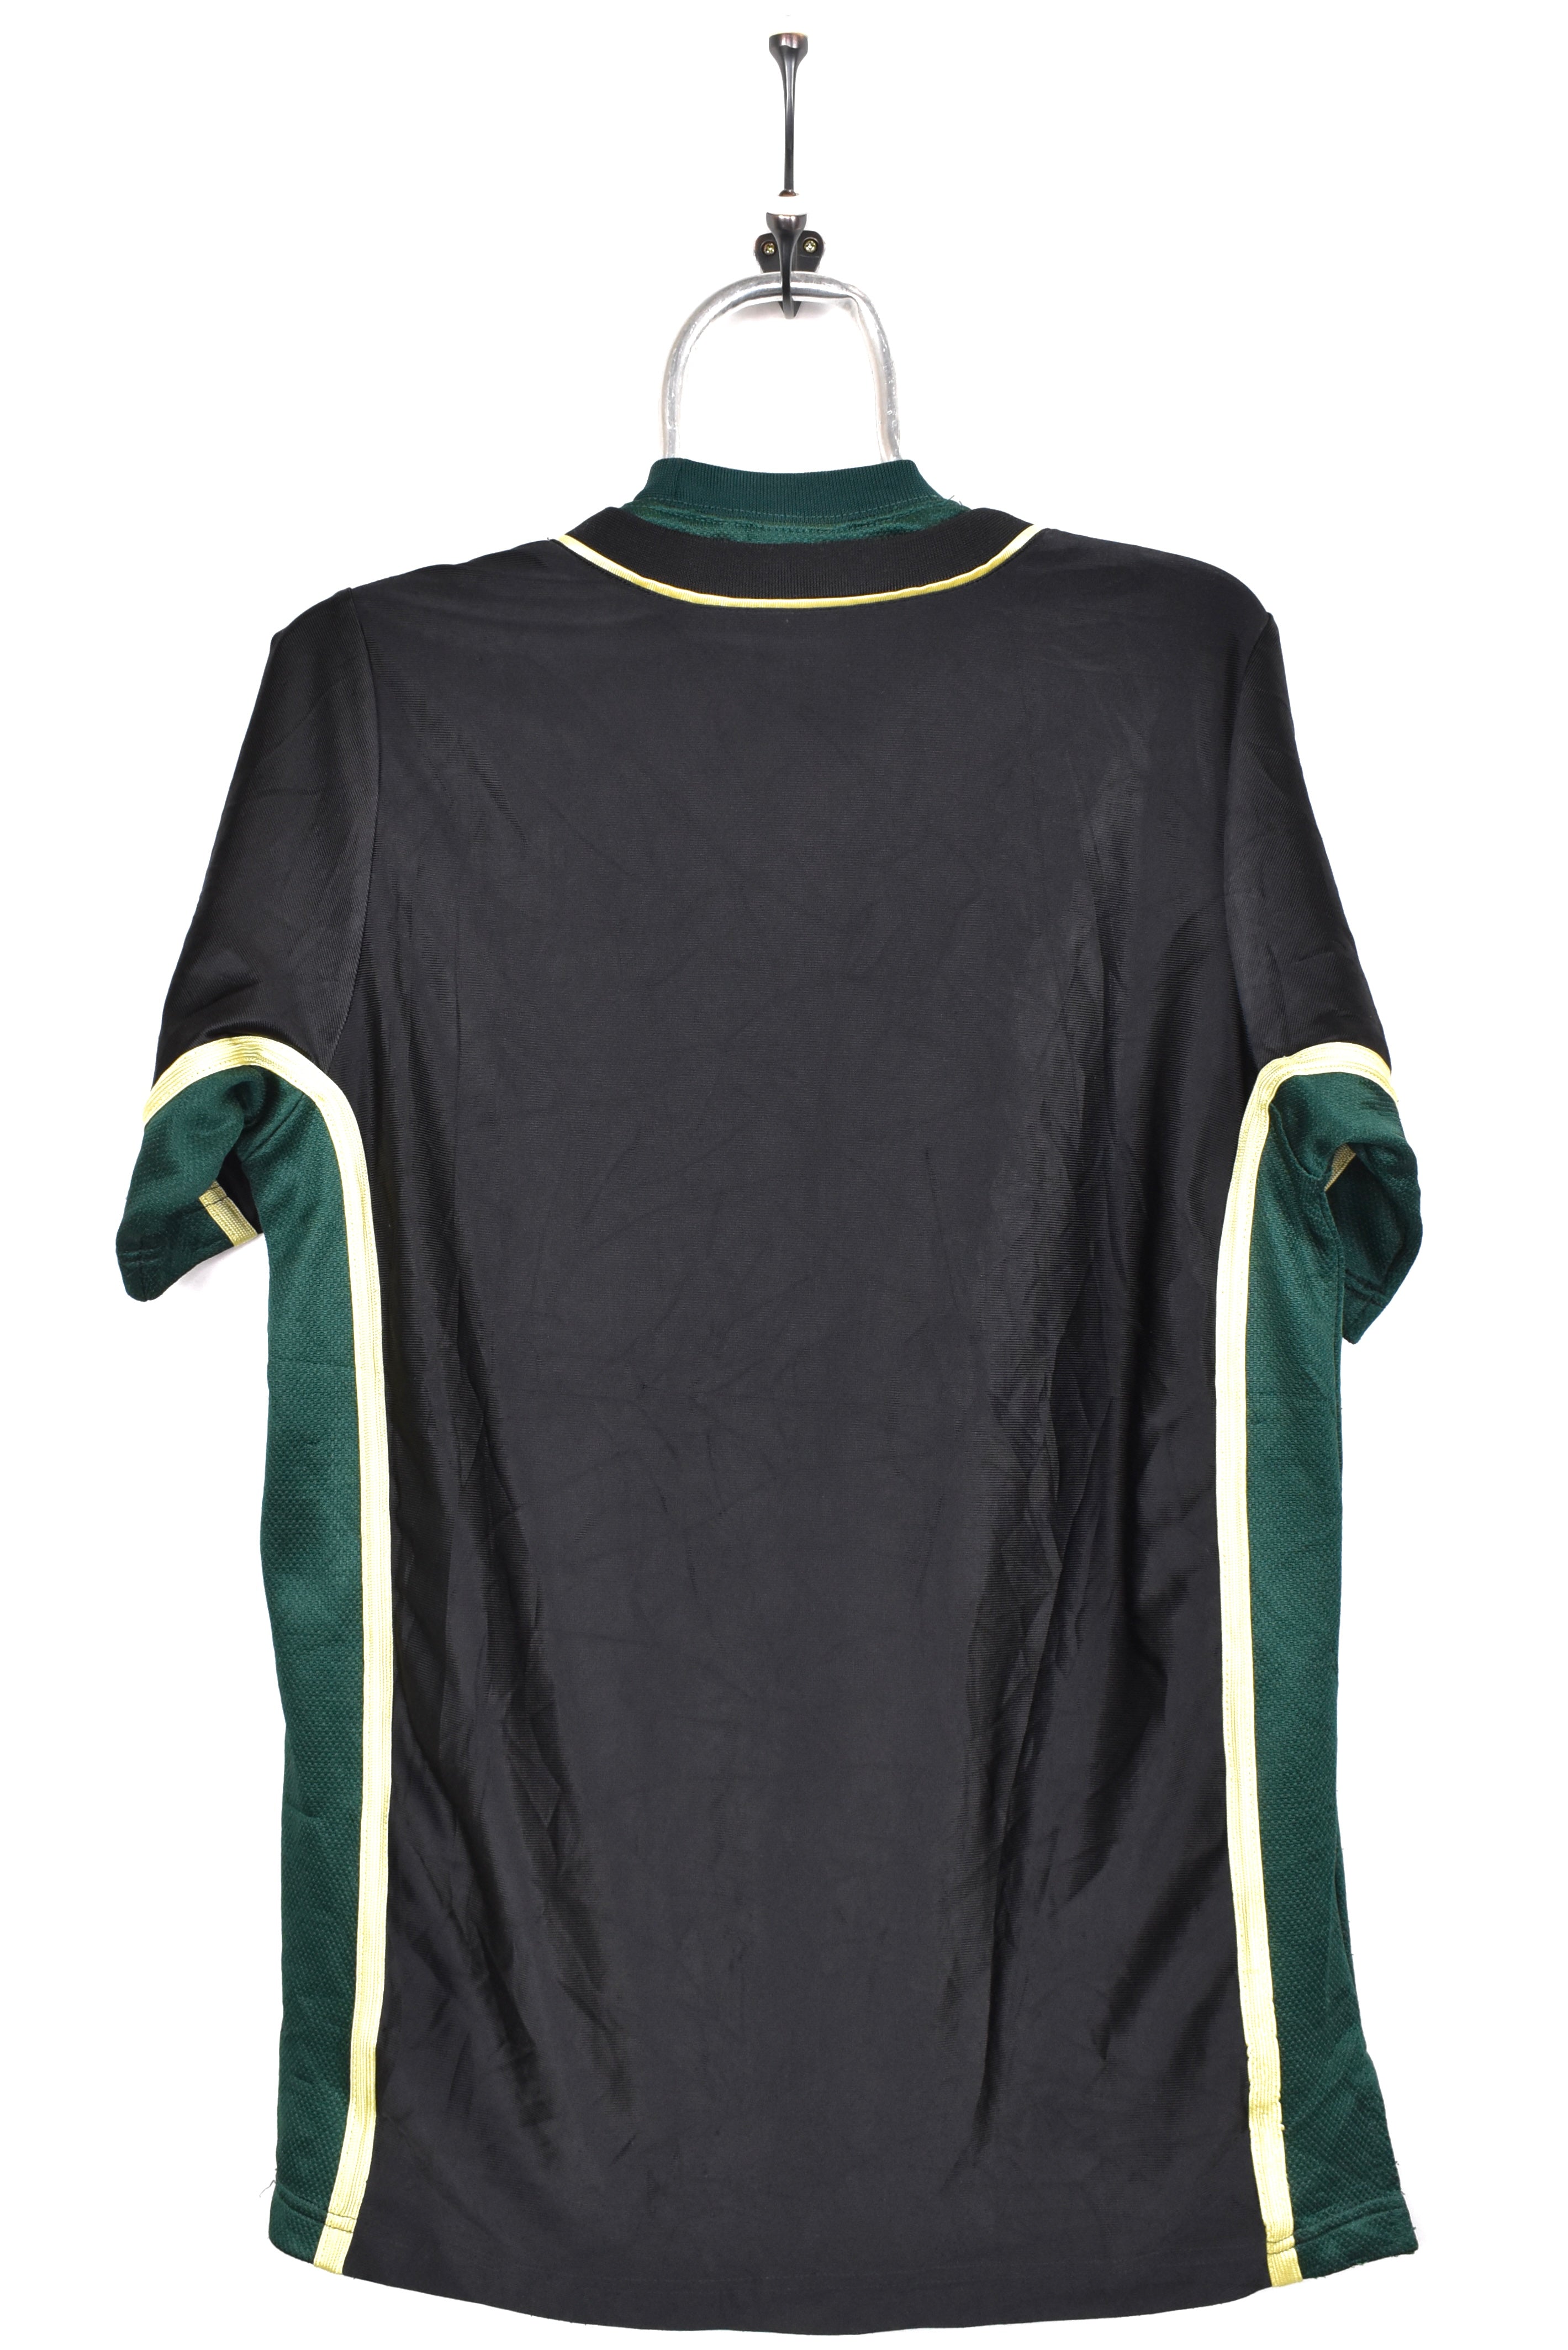 Vintage Adidas shirt, black athletic embroidered tee - AU Medium ADIDAS